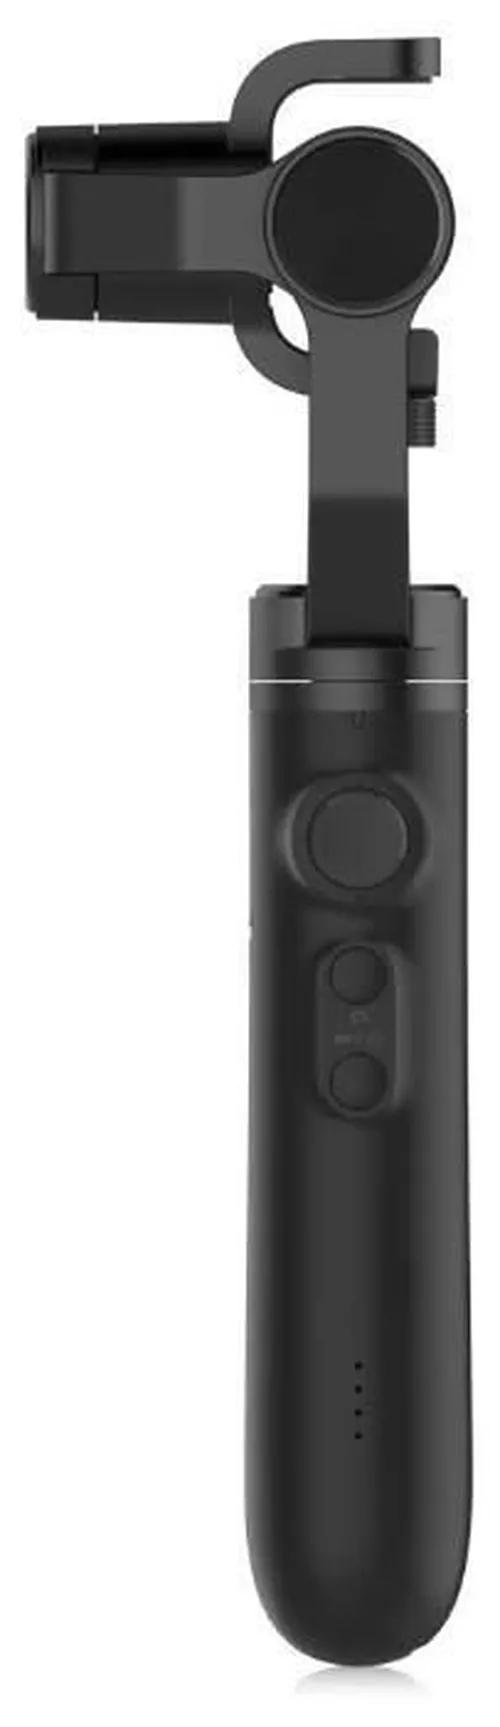 купить Стабилизатор Xiaomi Mi Action Camera Handheld Gimbal, Black в Кишинёве 